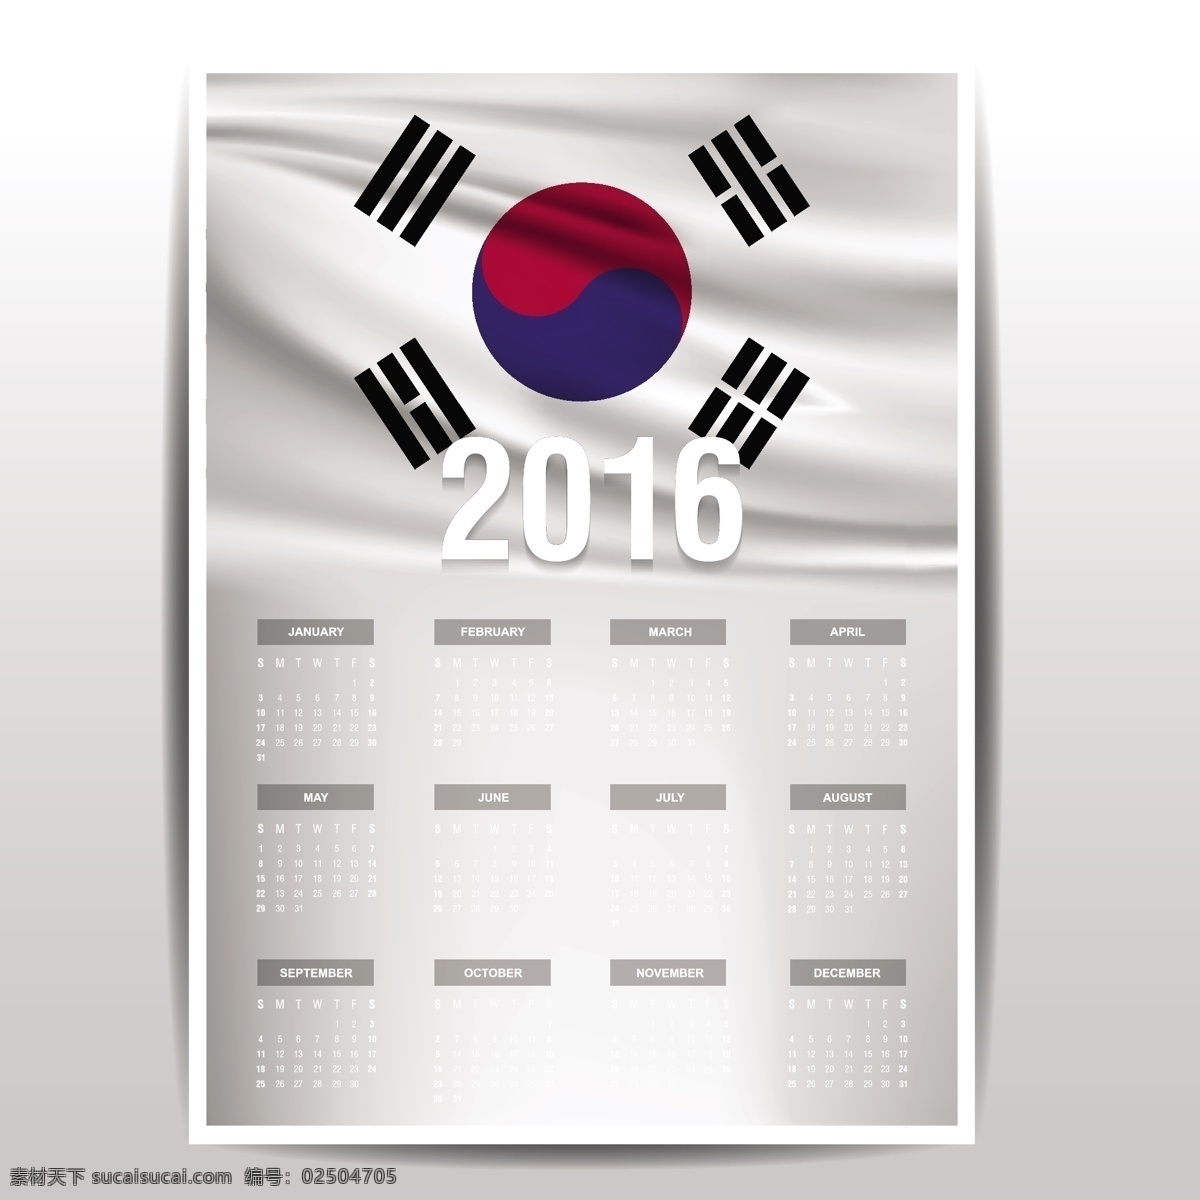 韩国国旗日历 日历 国旗 时间 数字 2016年 韩国 年份 国家 日期 日程安排 记事本 规划师